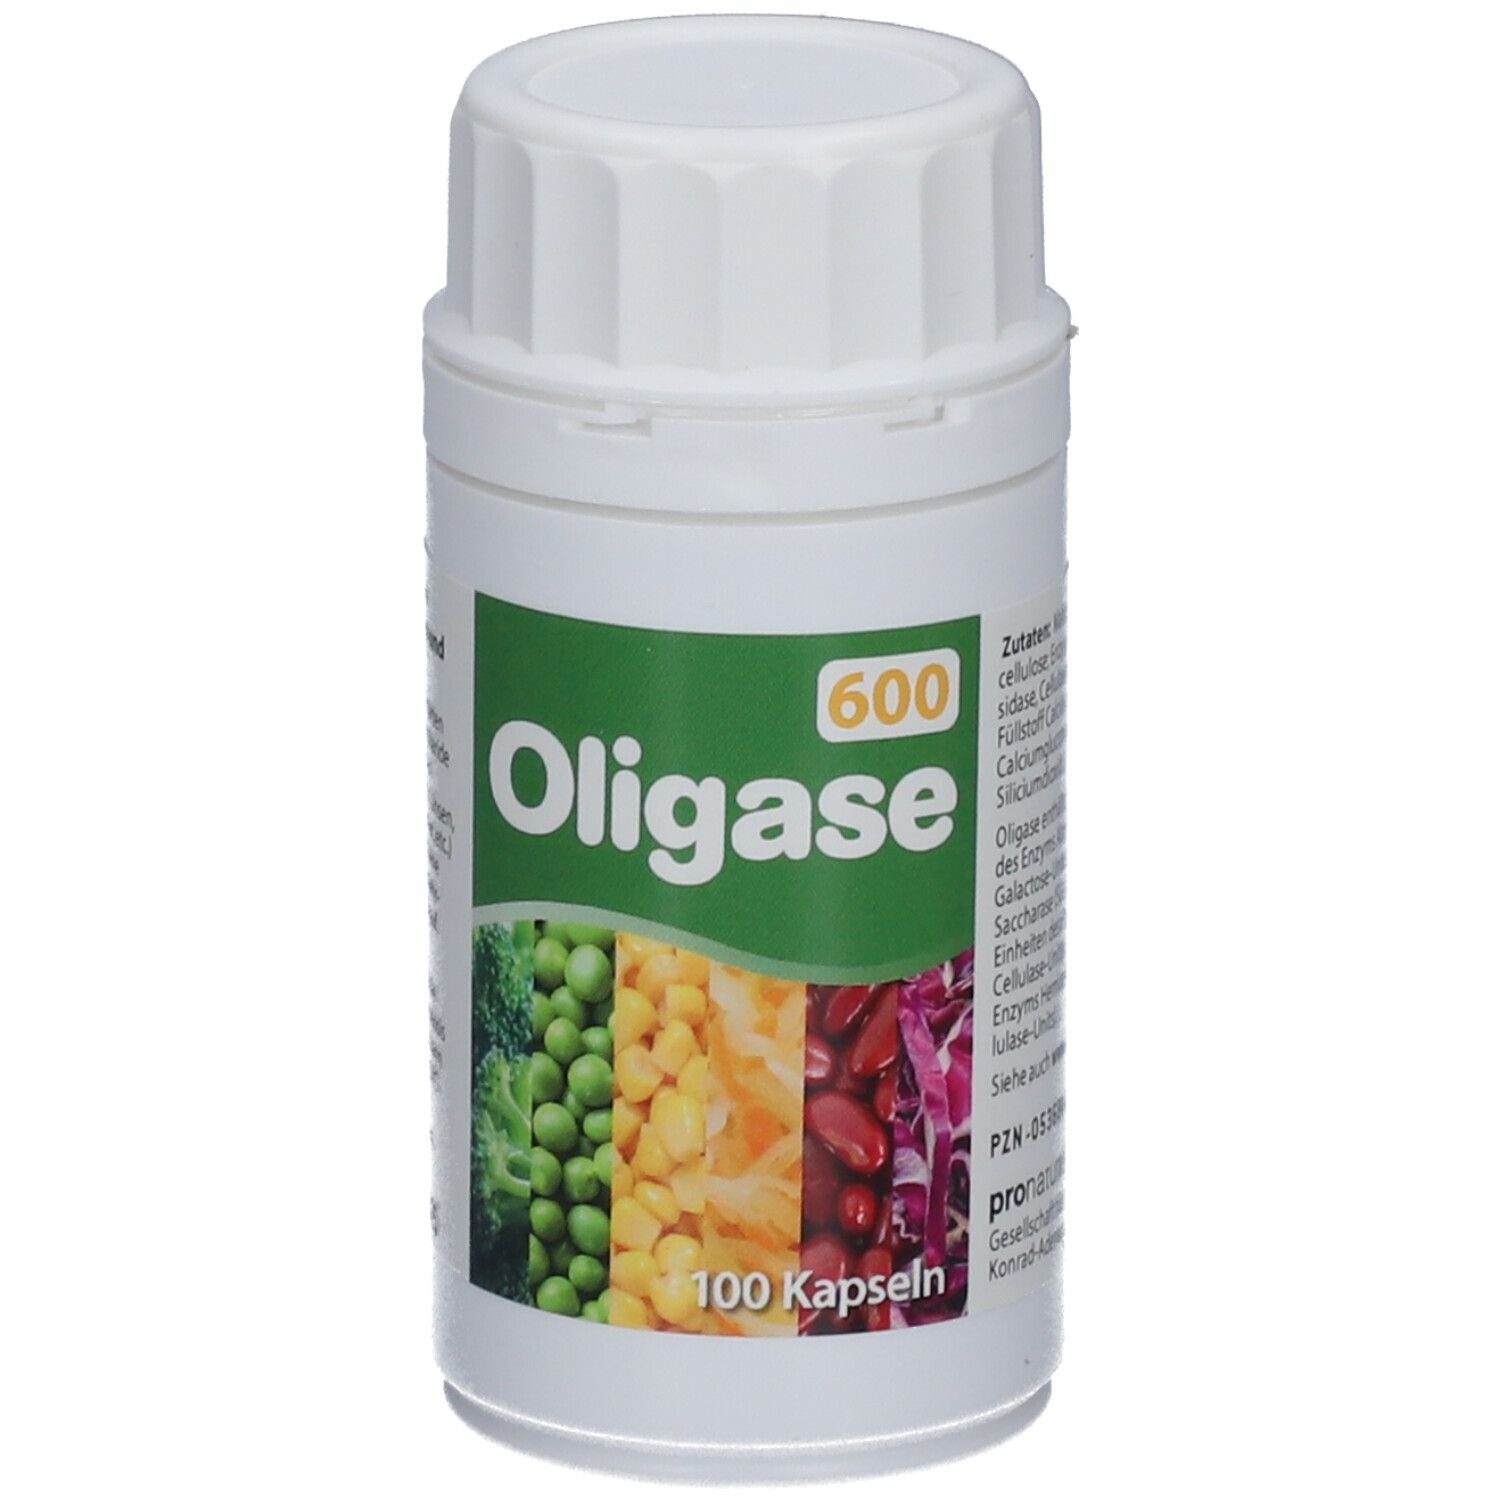 Image of Oligase® 600 Kapseln